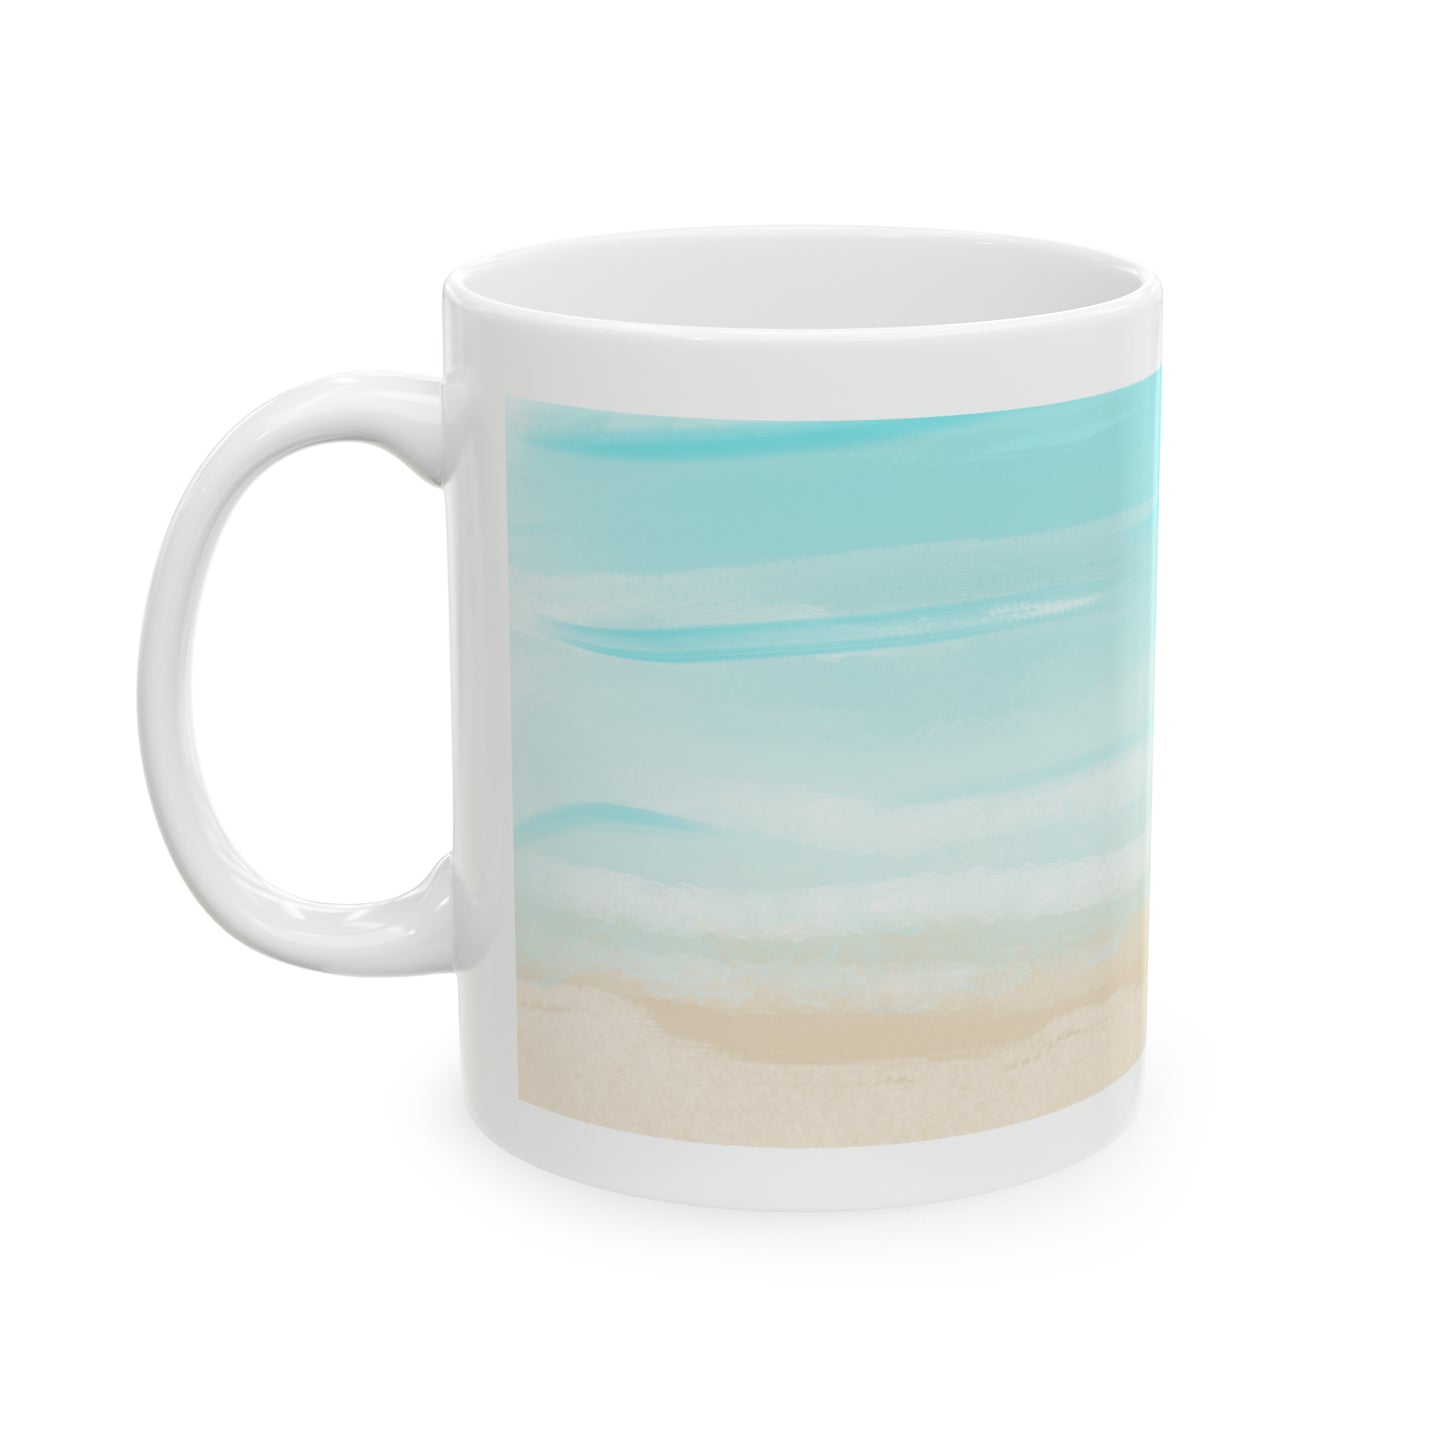 Coastal Themed Ceramic Mug, 11oz